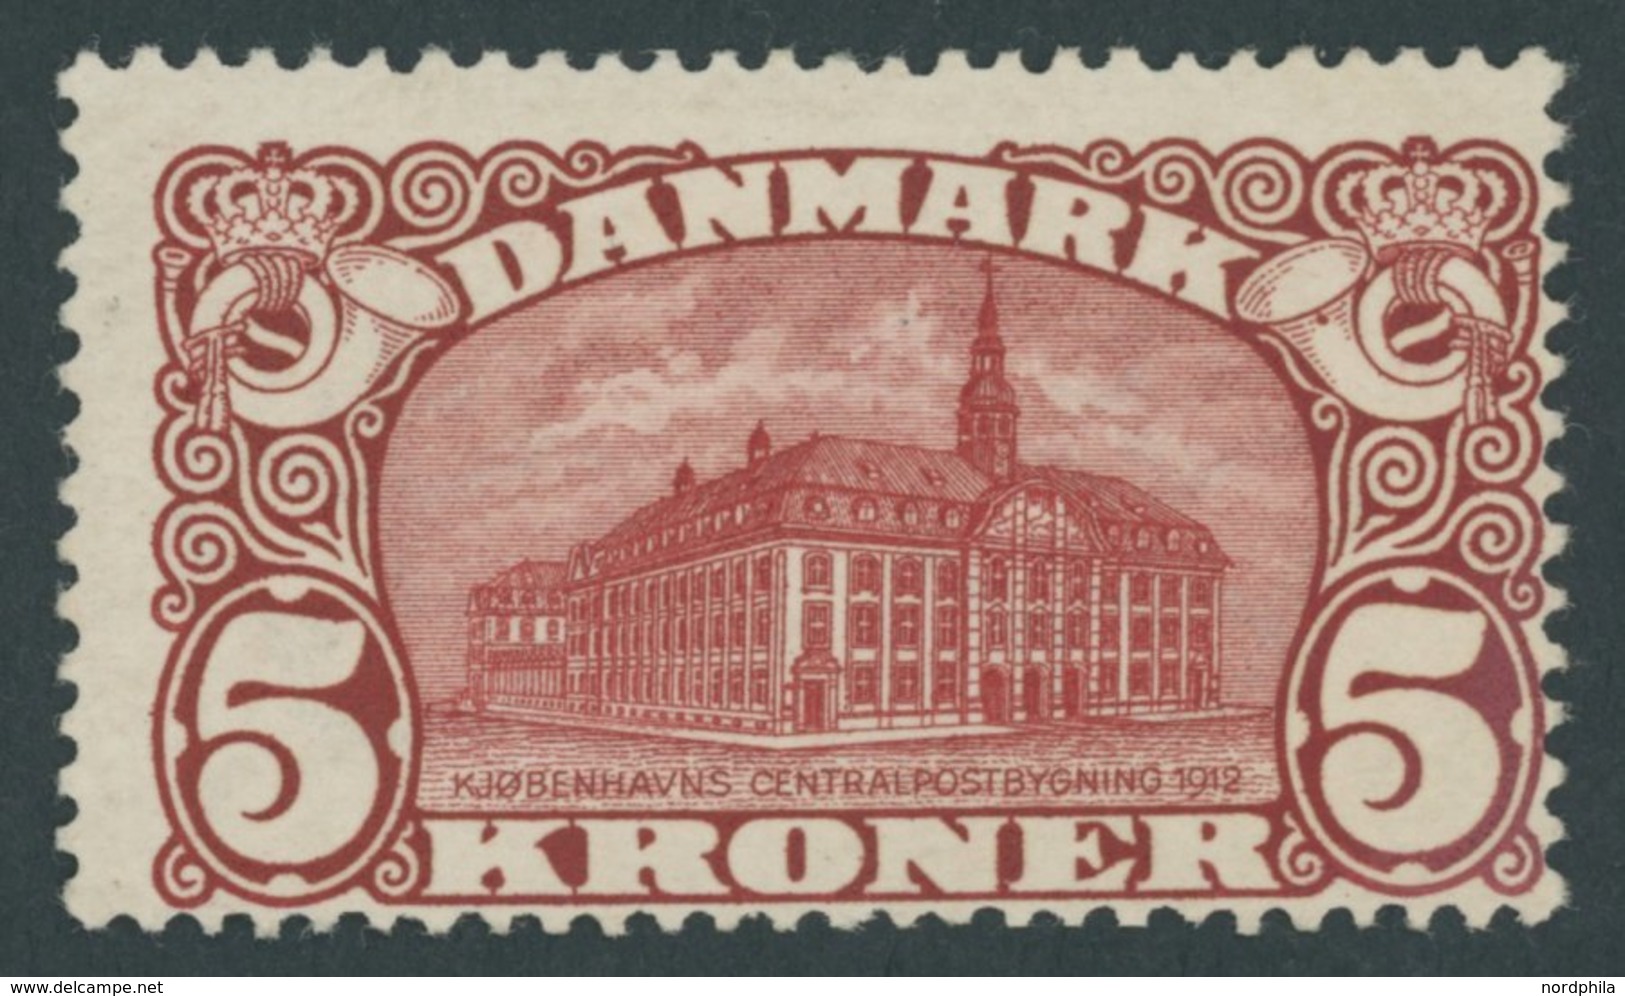 DÄNEMARK 66 *, 1912, 5 Kr. Hauptpost, Wz. 1, Mehrere Falzrest, Pracht, Mi. 350.- - Used Stamps